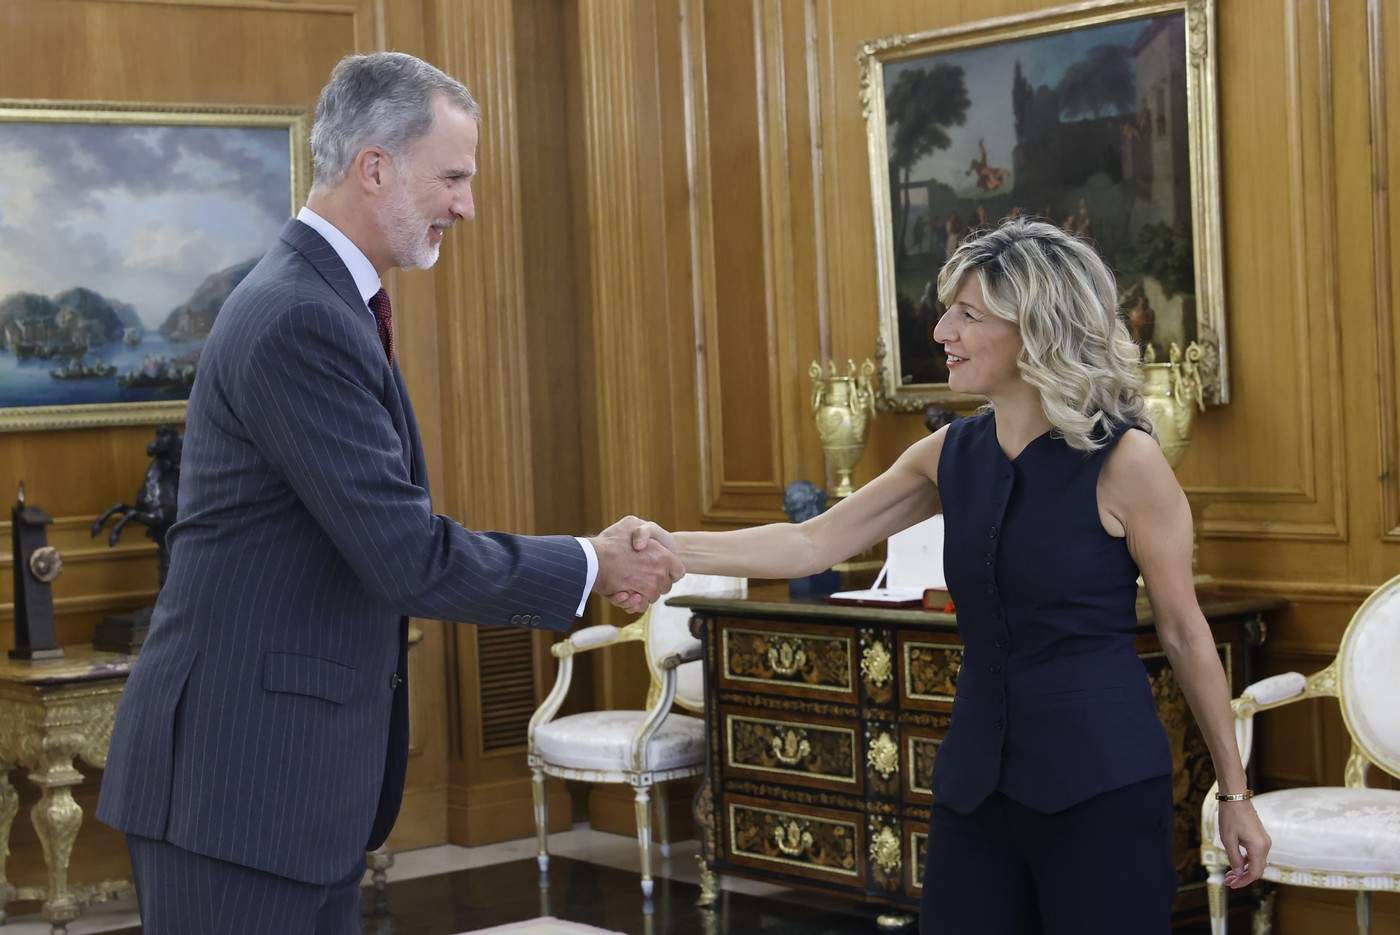 Su Majestad el Rey recibe el saludo de la representante de SUMAR, Doña Yolanda Díaz Pérez

Palacio de La Zarzuela. Madrid, 02.10.2023